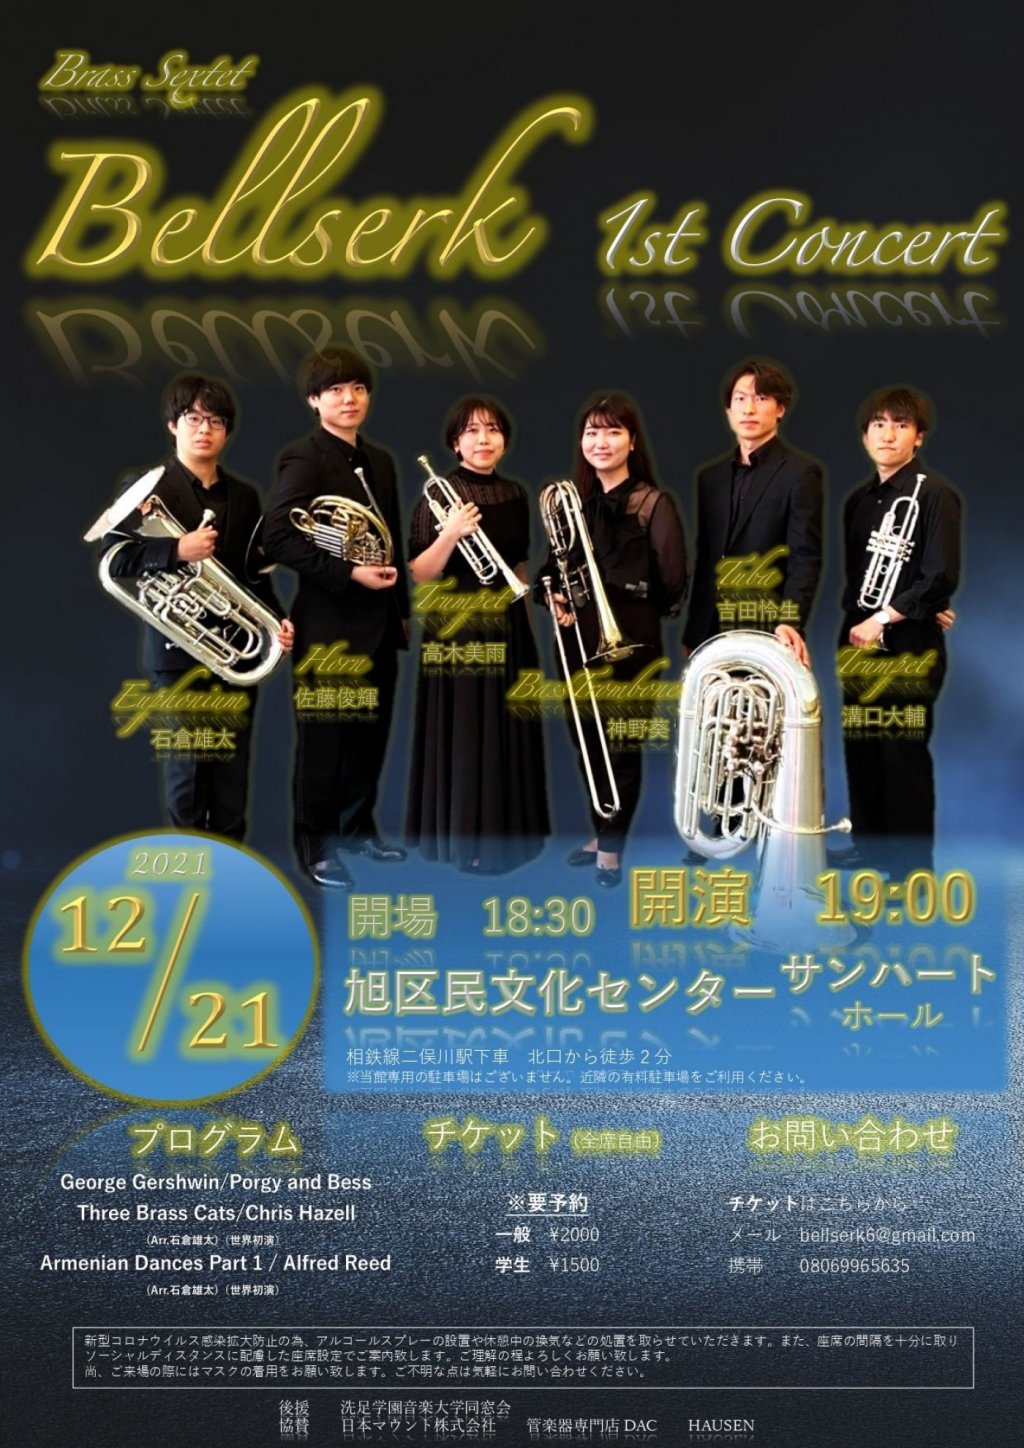 Bellserk 1st Concert